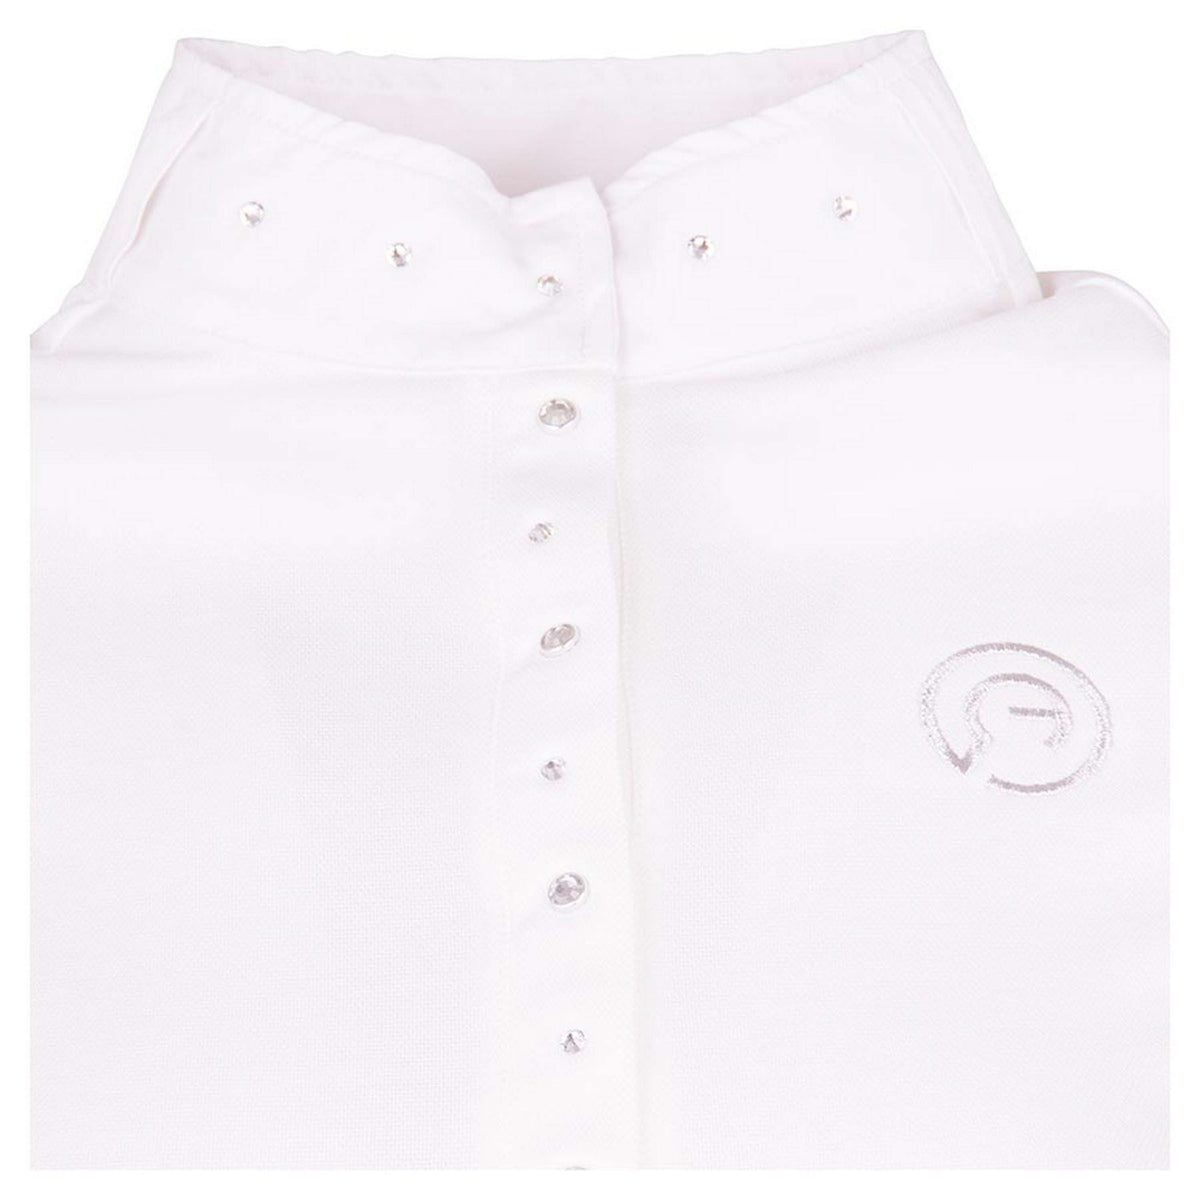 ANKY Turniershirt Glamour C-Wear Weiß